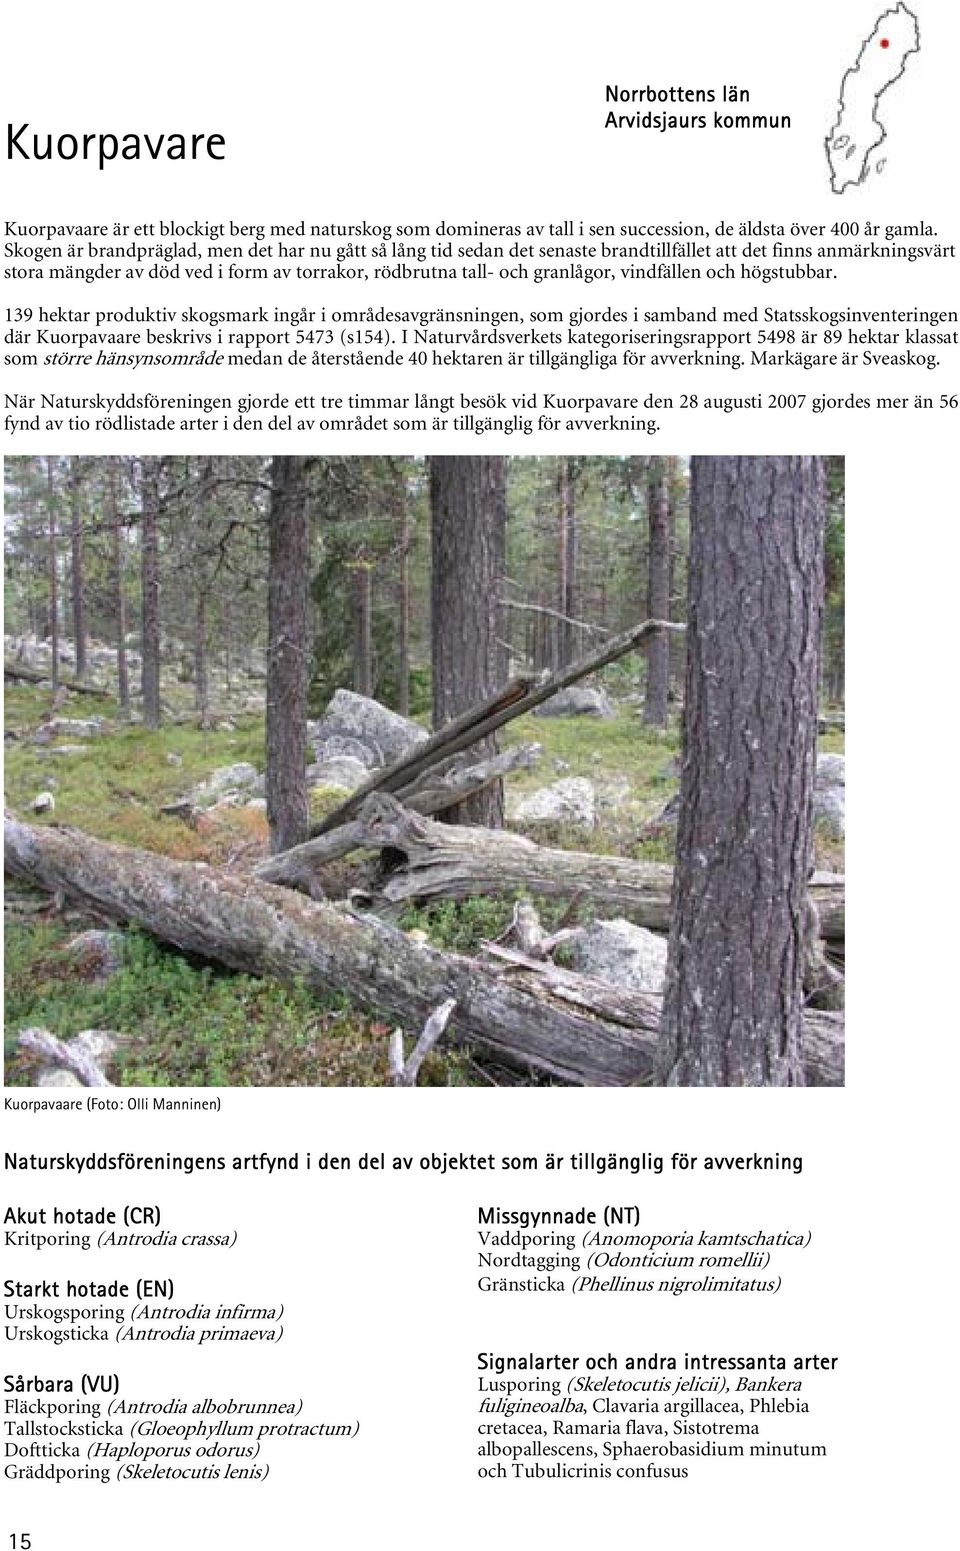 vindfällen och högstubbar. 139 hektar produktiv skogsmark ingår i områdesavgränsningen, som gjordes i samband med Statsskogsinventeringen där Kuorpavaare beskrivs i rapport 5473 (s154).